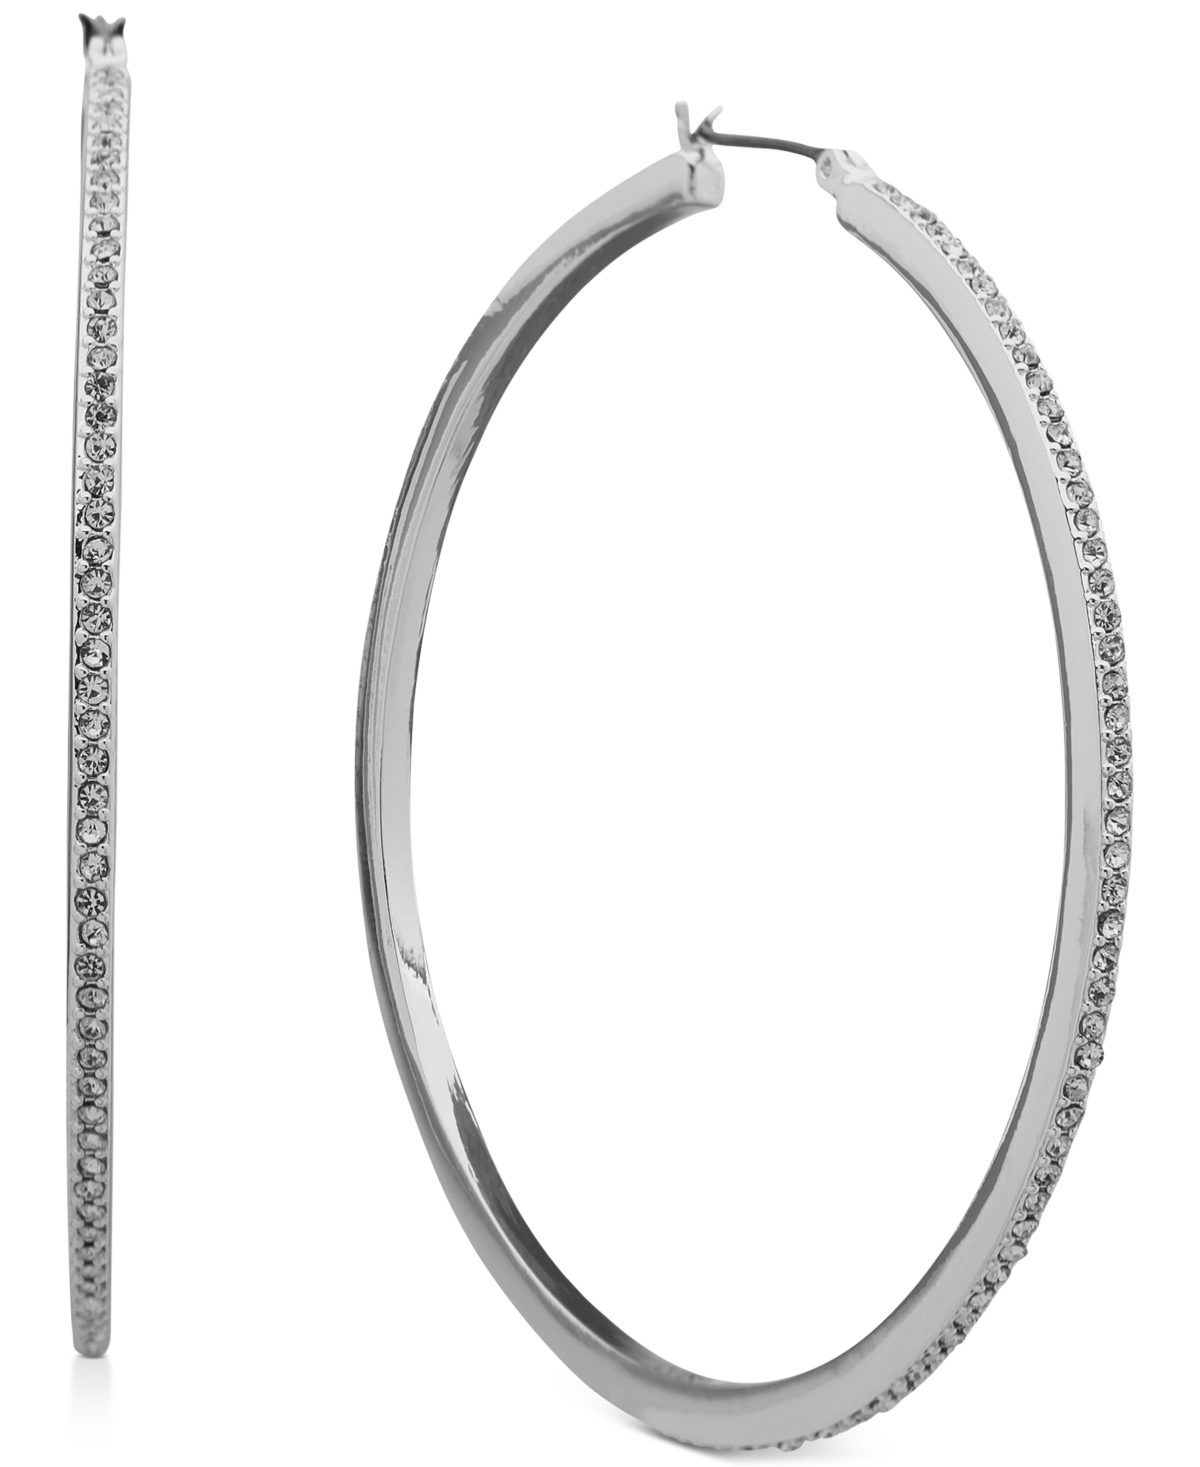 Crystal Pave Large Hoop Earrings, 2.3" - White